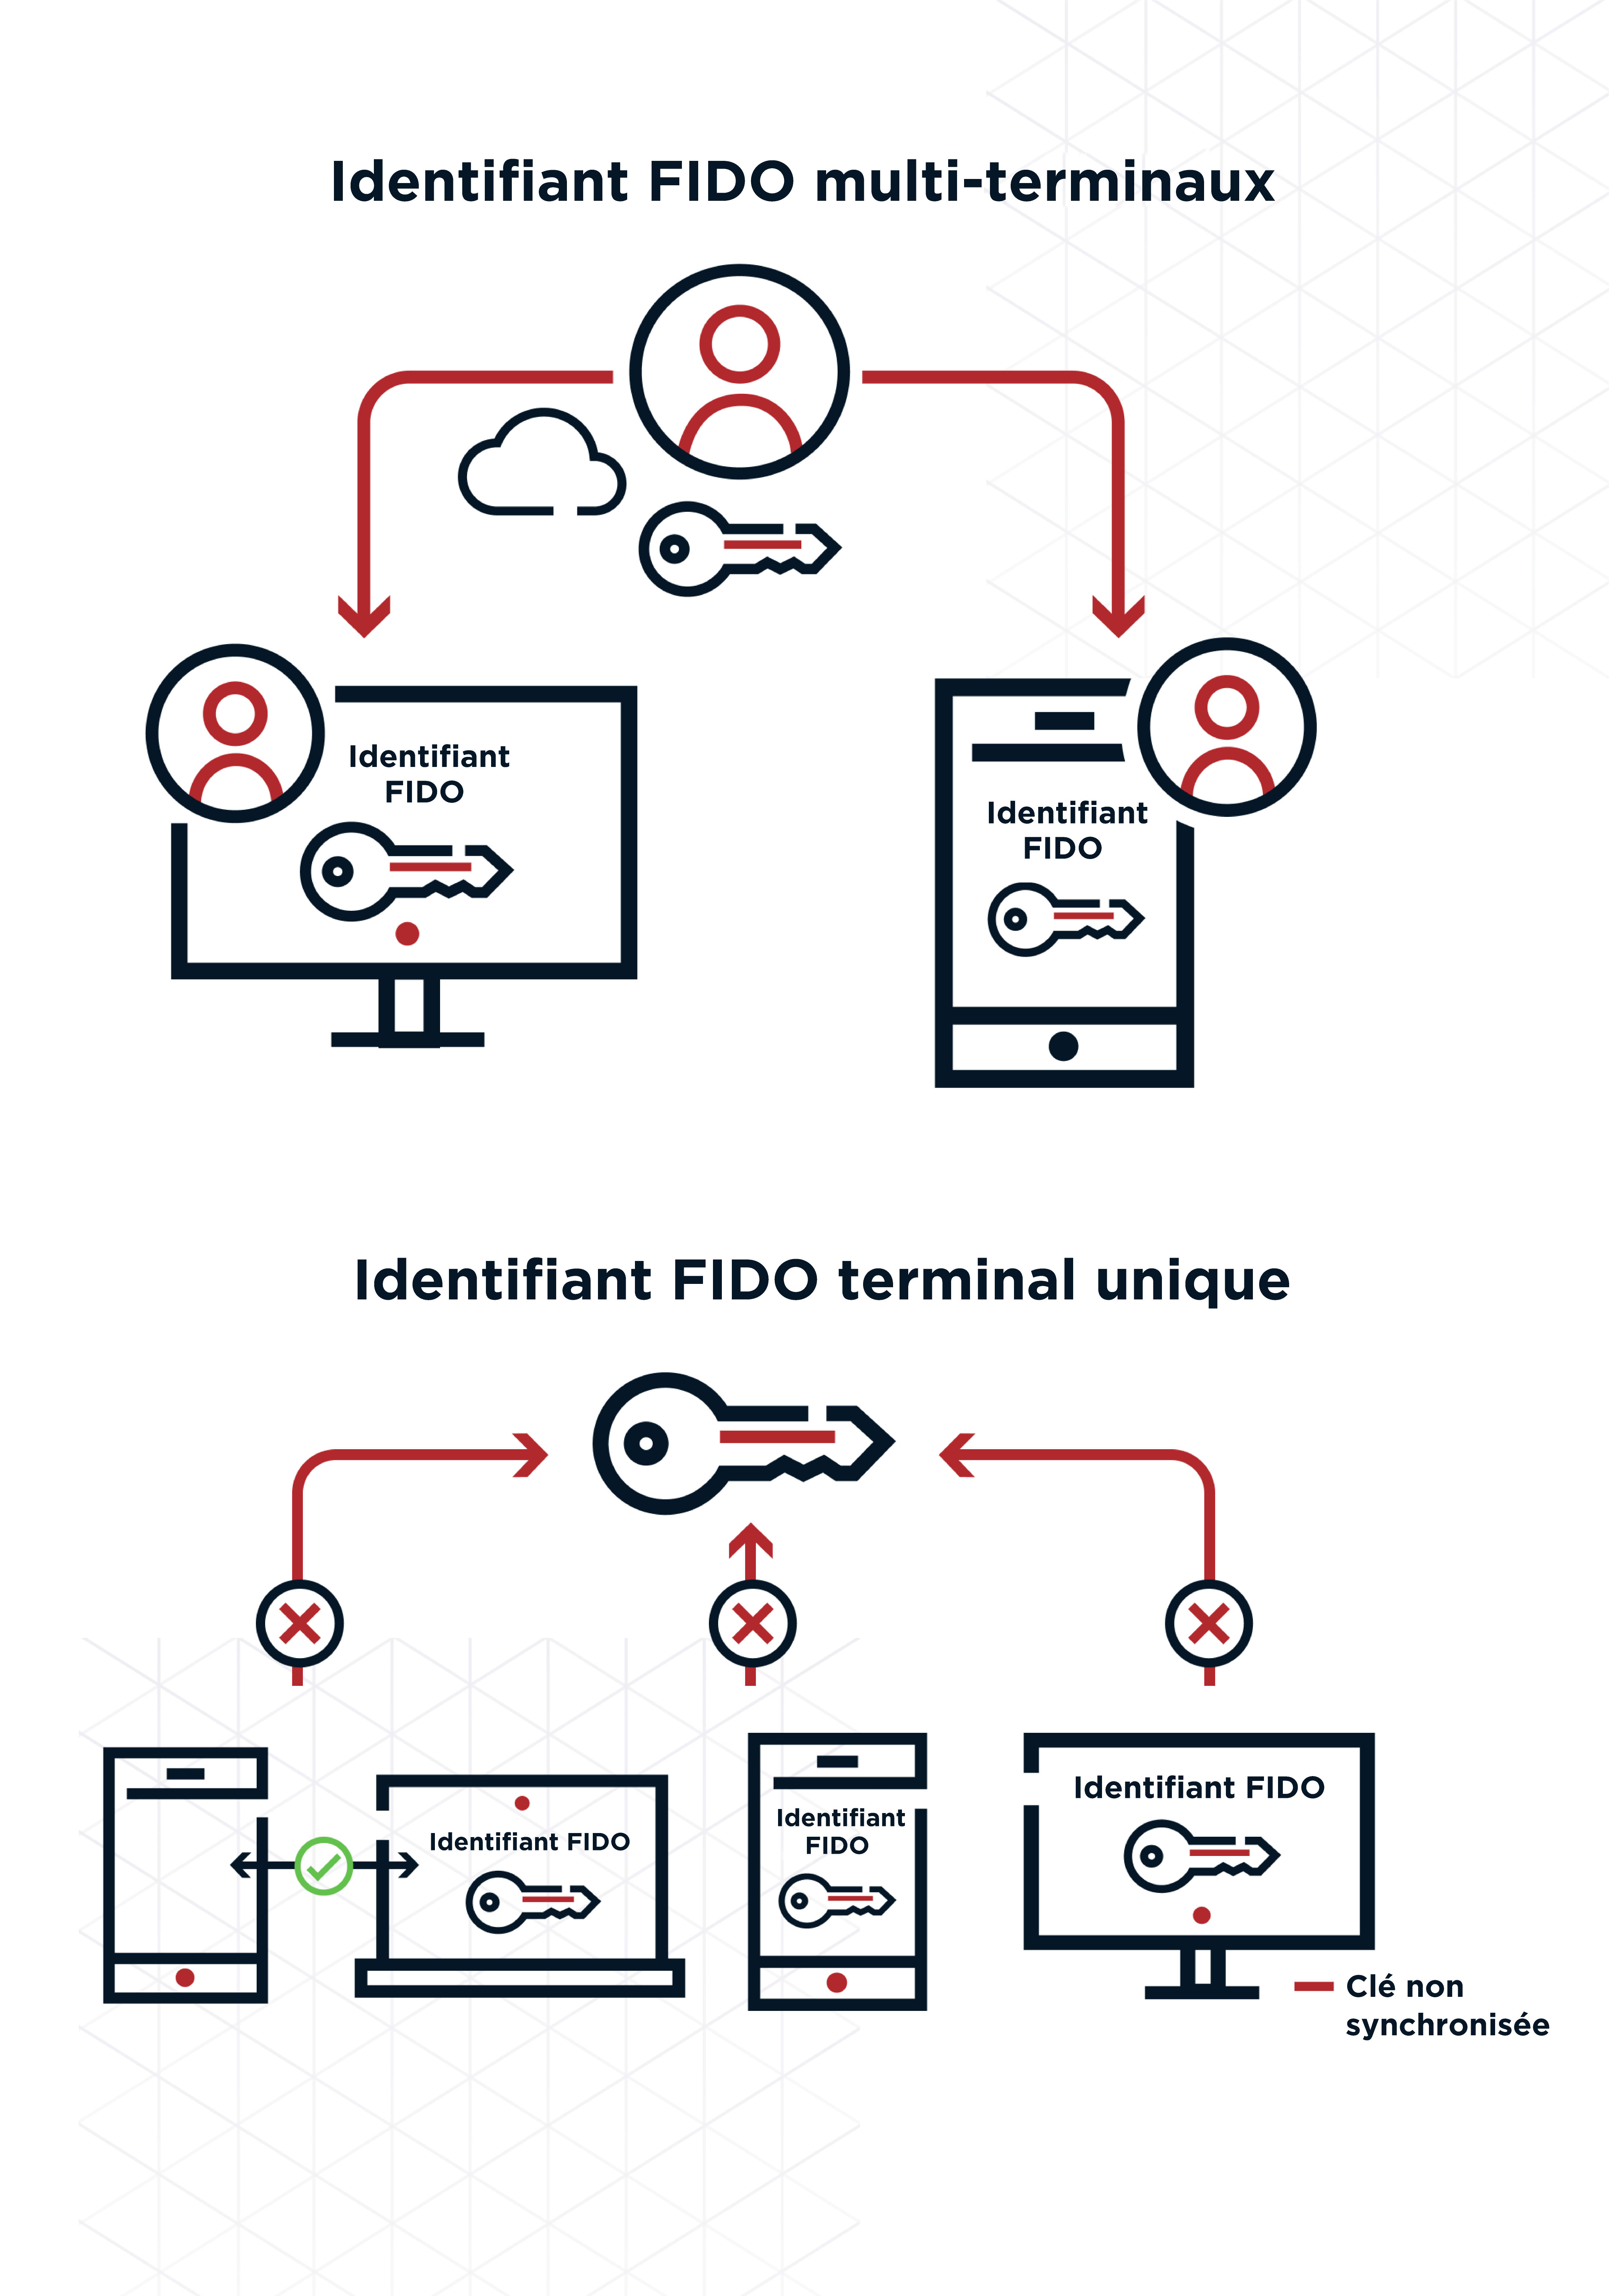 Un diagramme montrant l’identifiant de clé FIDO multi-terminaux et le terminal unique de l’identifiant de clé FIDO non synchronisée.